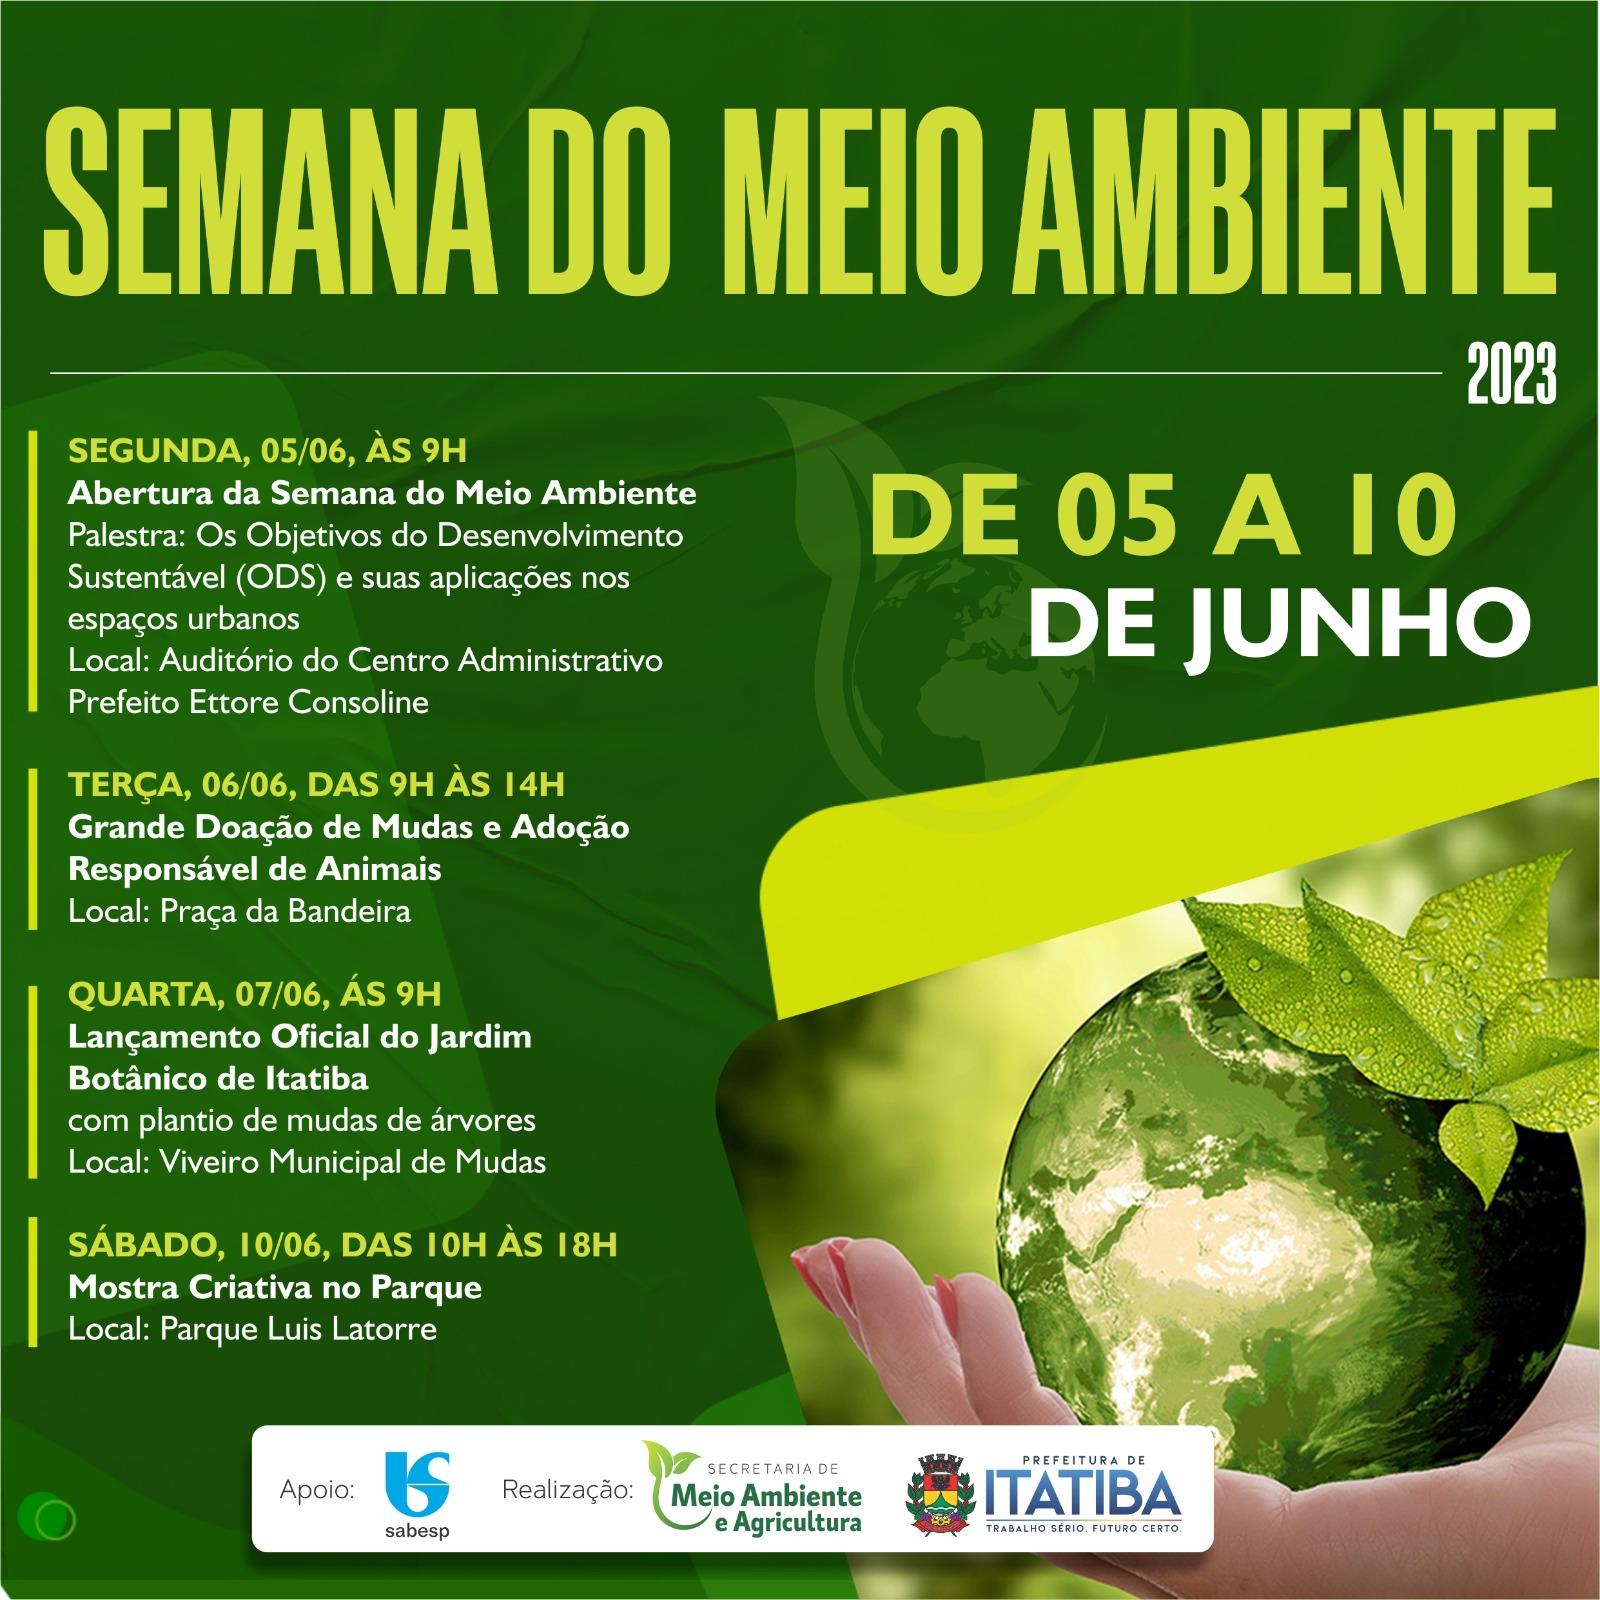 Palestra no Centro Administrativo dará início à Semana do Meio Ambiente